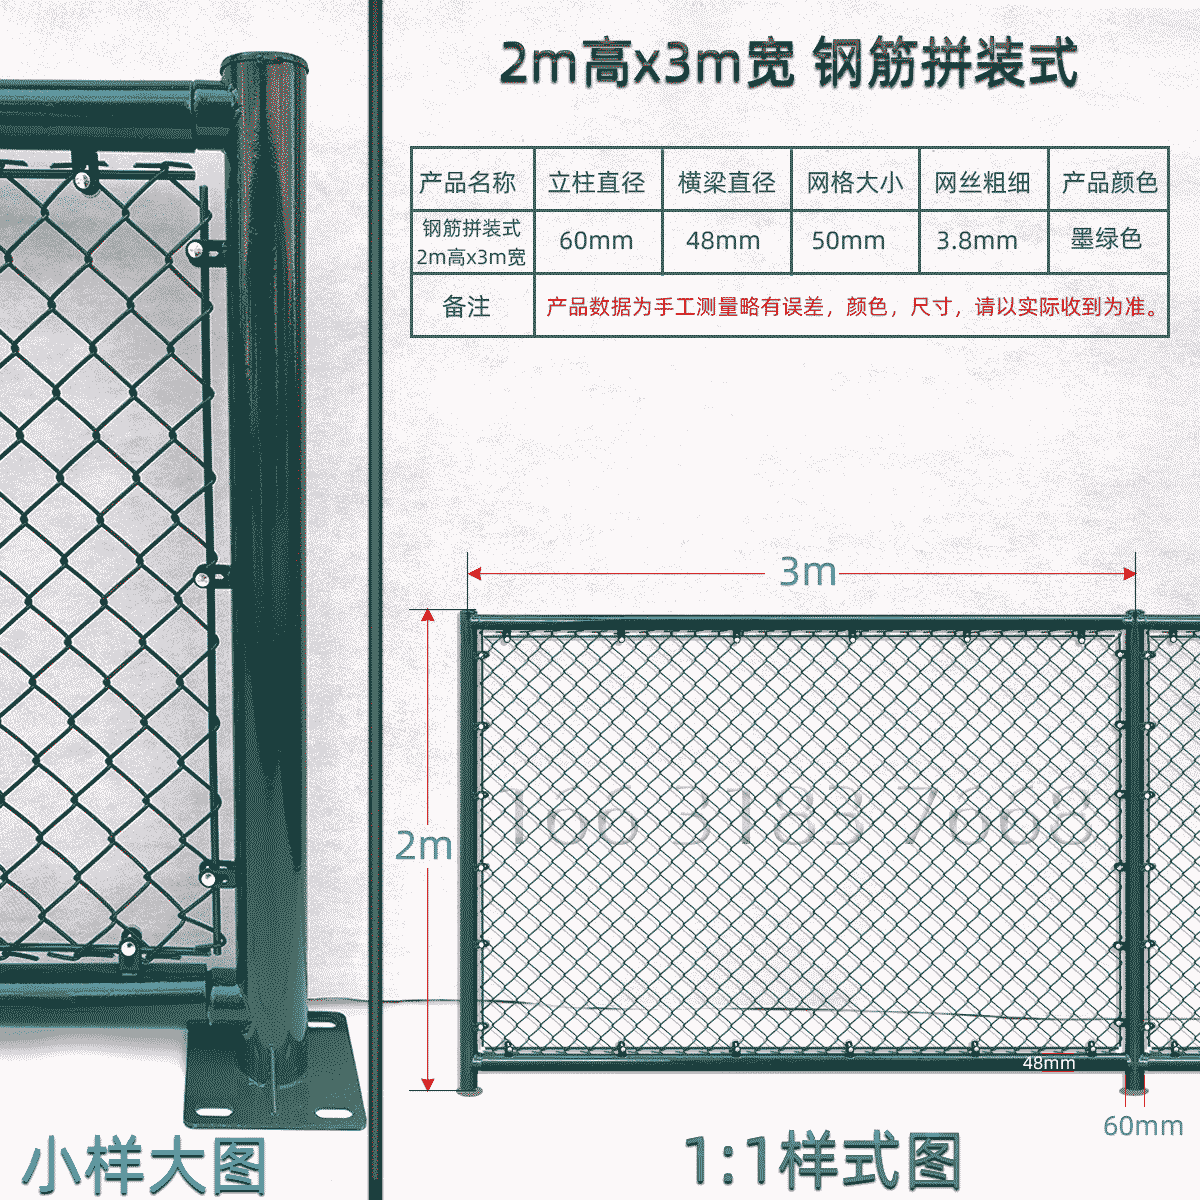 2m高x3m宽钢筋拼装式球场围栏网